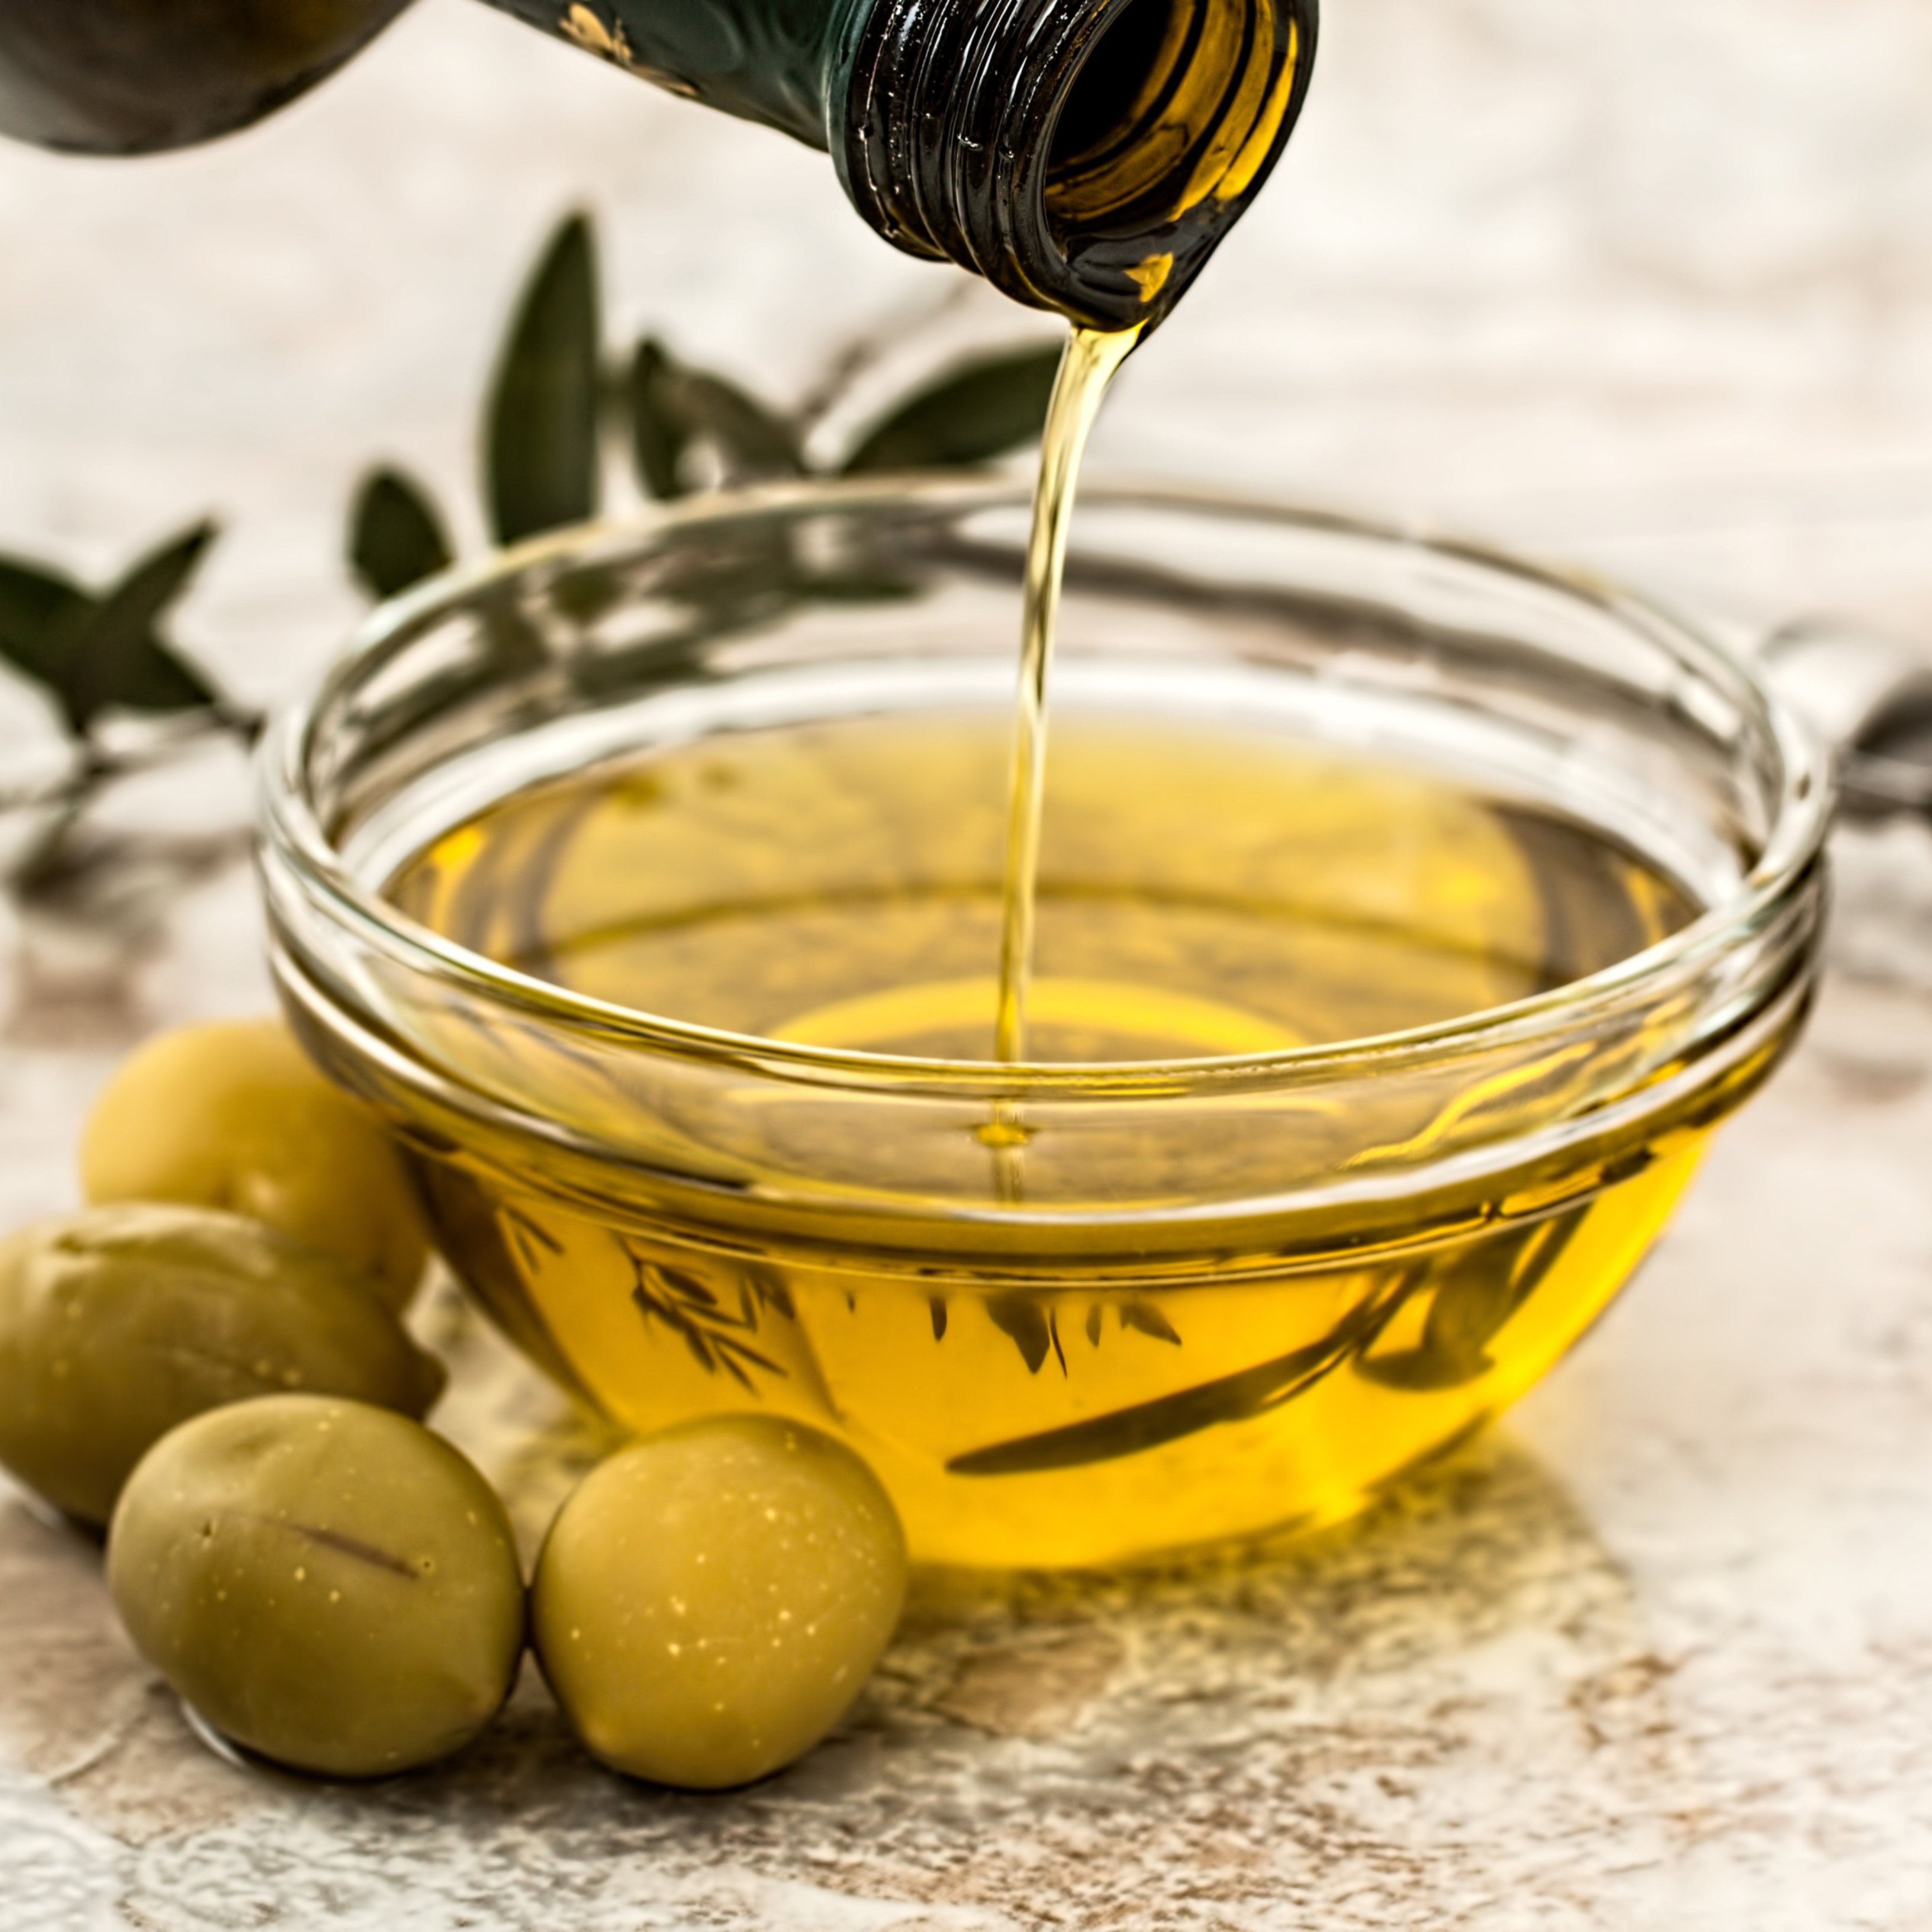 Si pateixes de restrenyiment, t'interessa saber com pot ajudar-te l'oli d'oliva